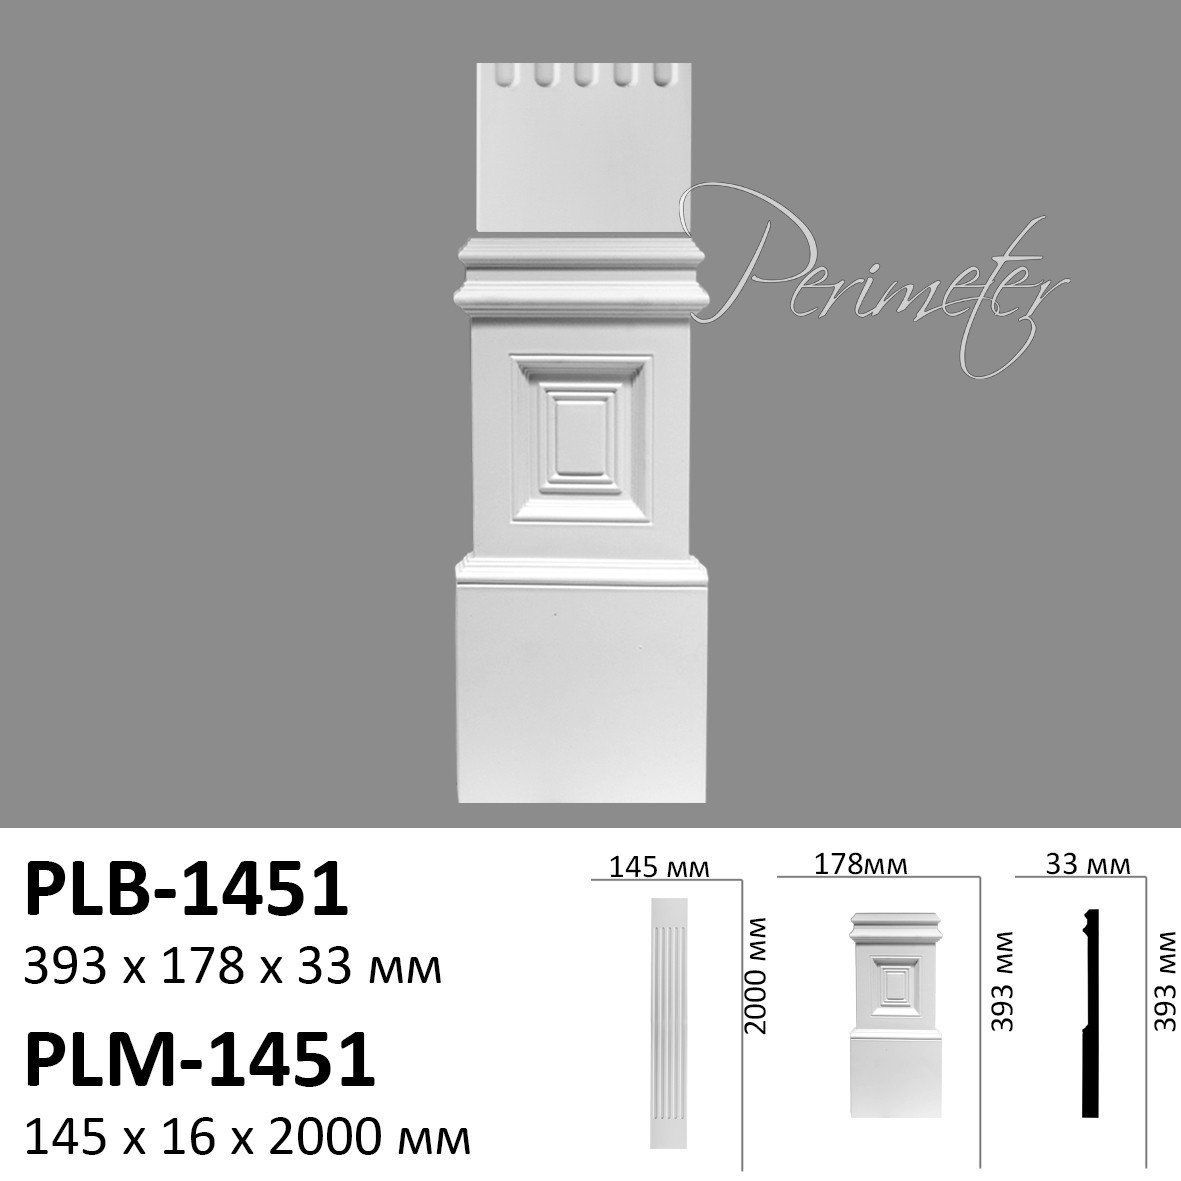 Пілястра Perimeter PLB-1451